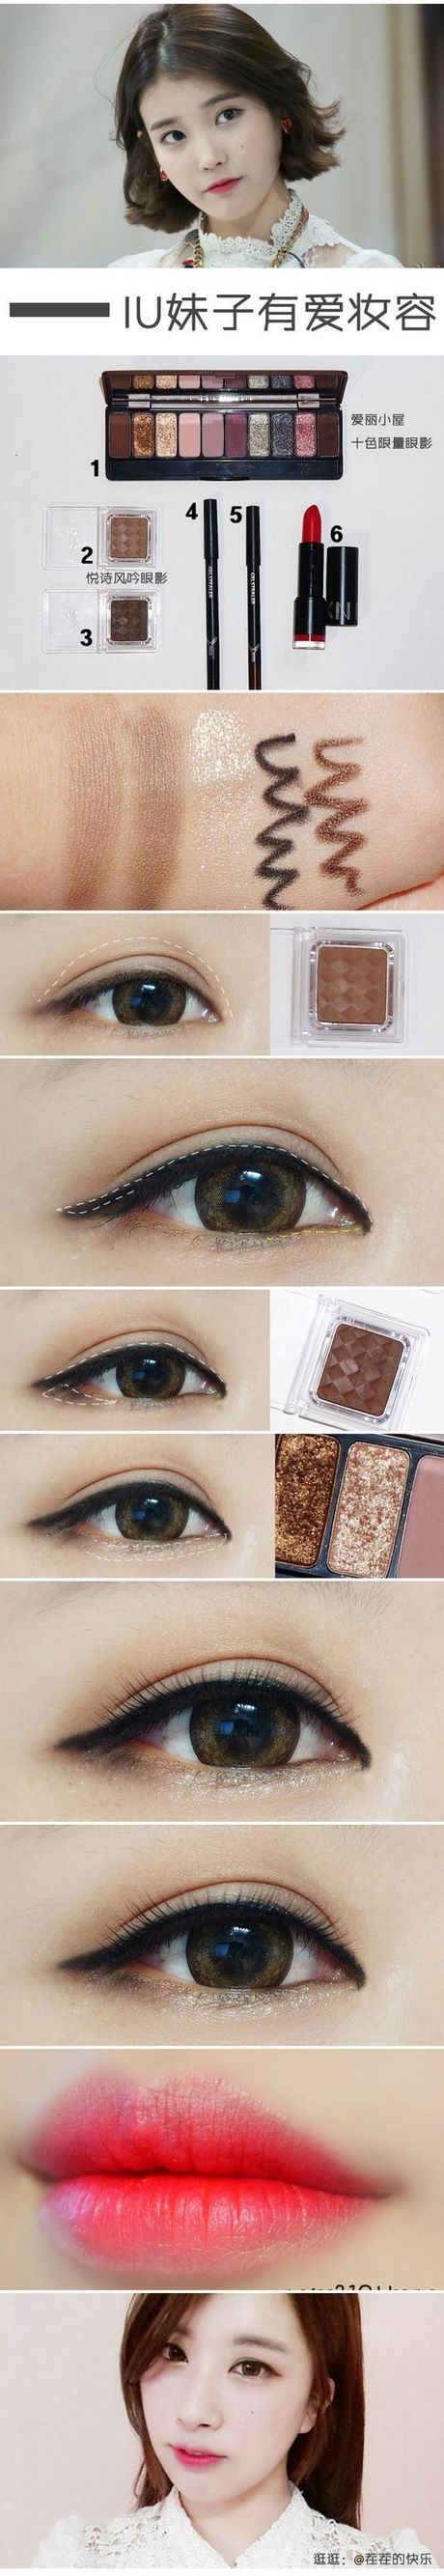 iu-makeup-tutorial-36_15 Iu make-up tutorial